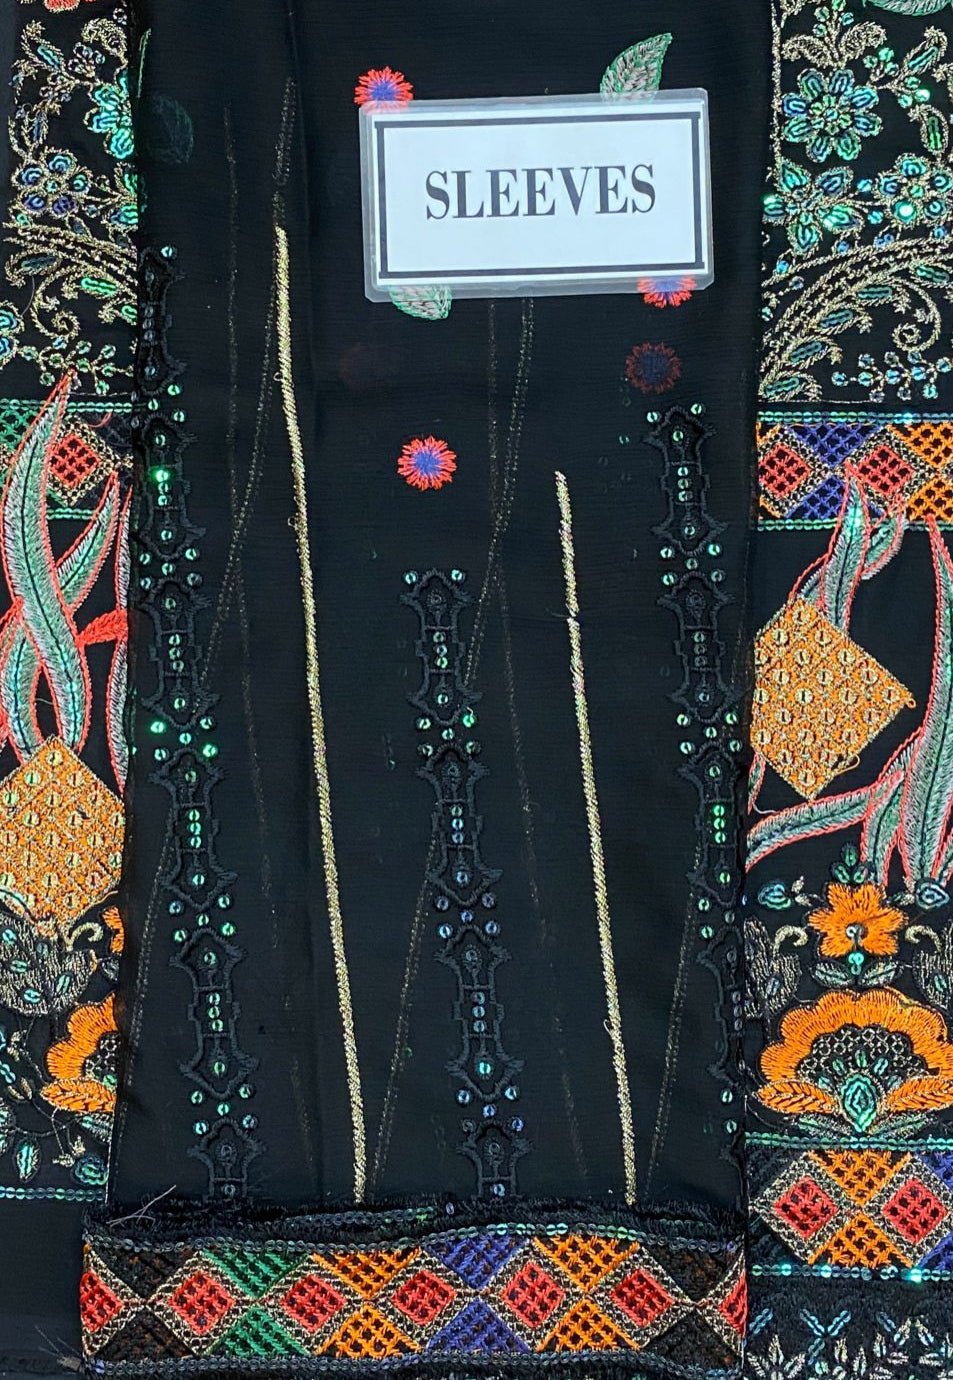 Maryam's Embroidered Pakistani Master Copy Chiffon Dress - db20000